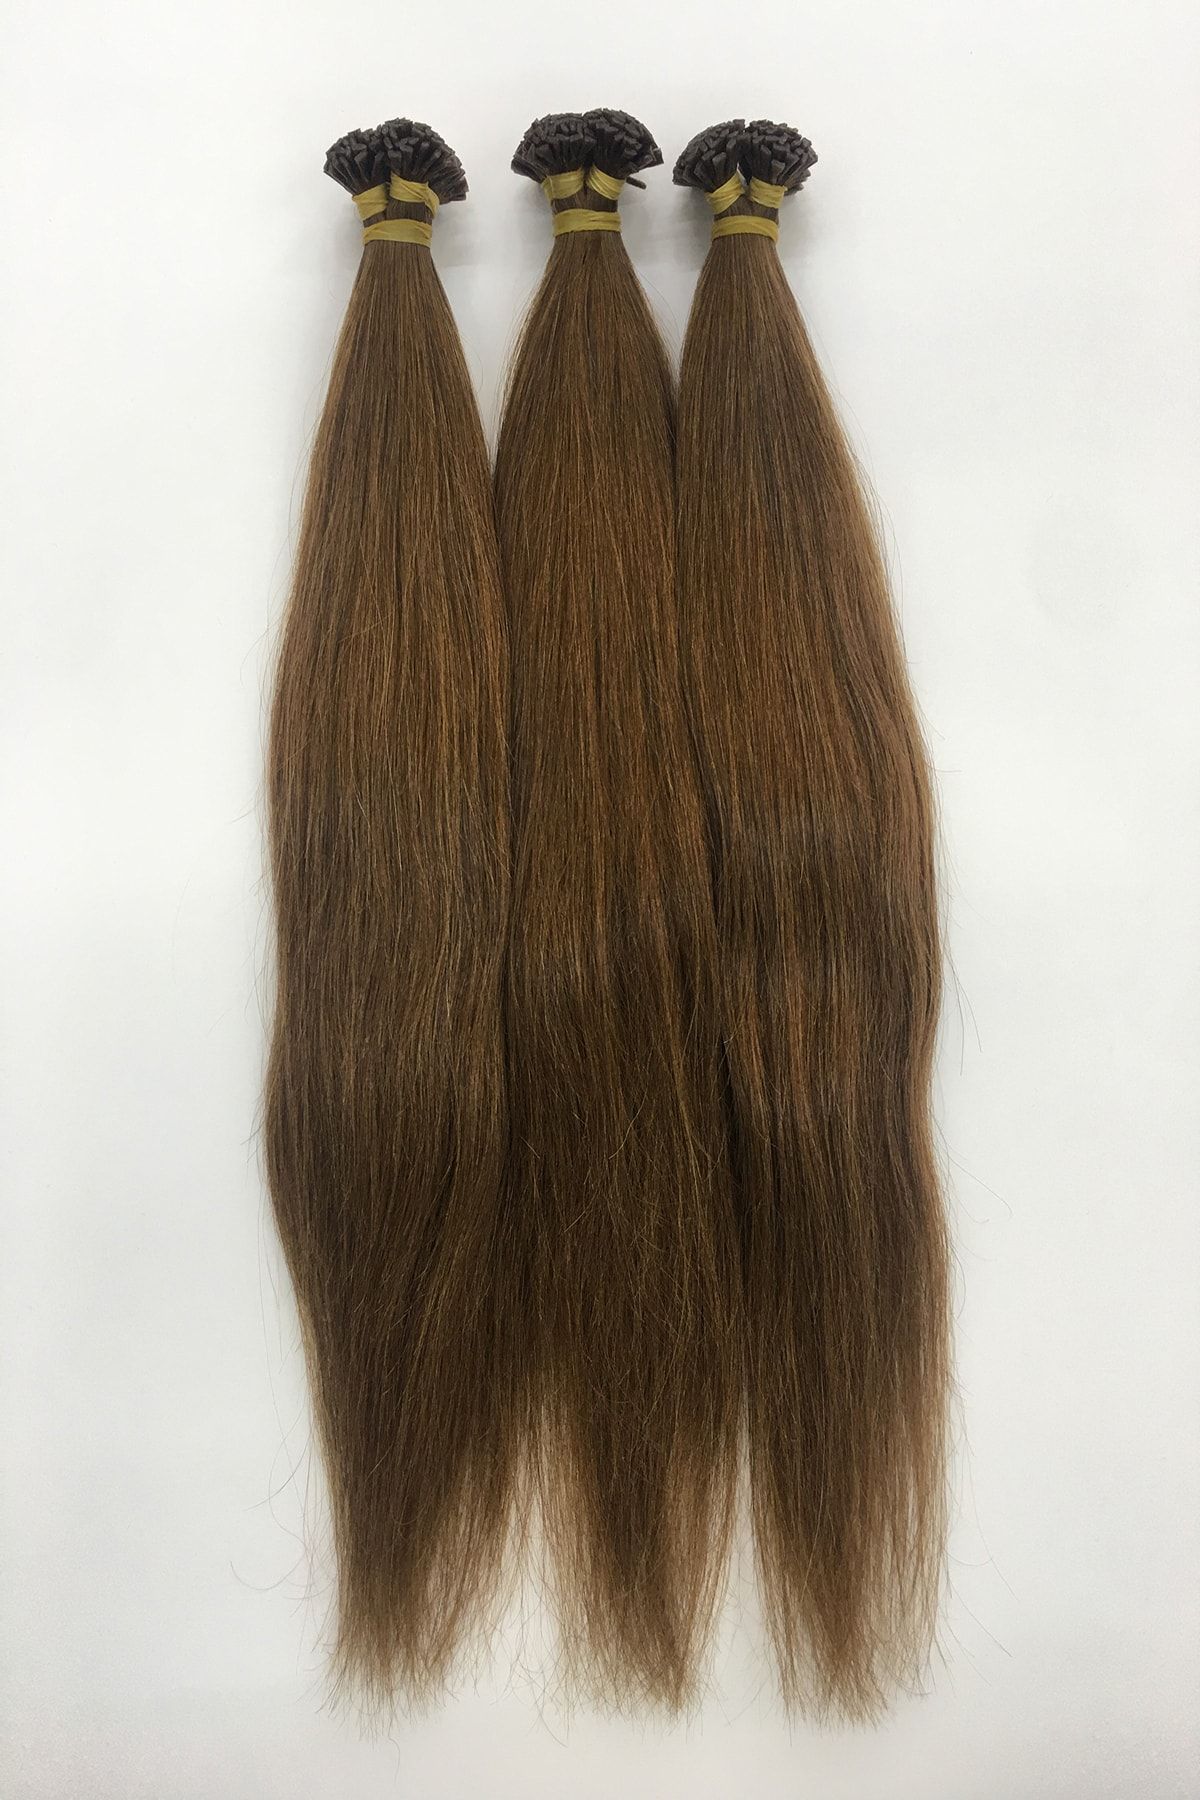 HalitCan HairKing Birinci Sınıf Yüzde Yüz Gerçek Insan Saçı (açık Kestane 5/4 Saç Rengi)50 Cm (200 Adet)mikro Kaynak